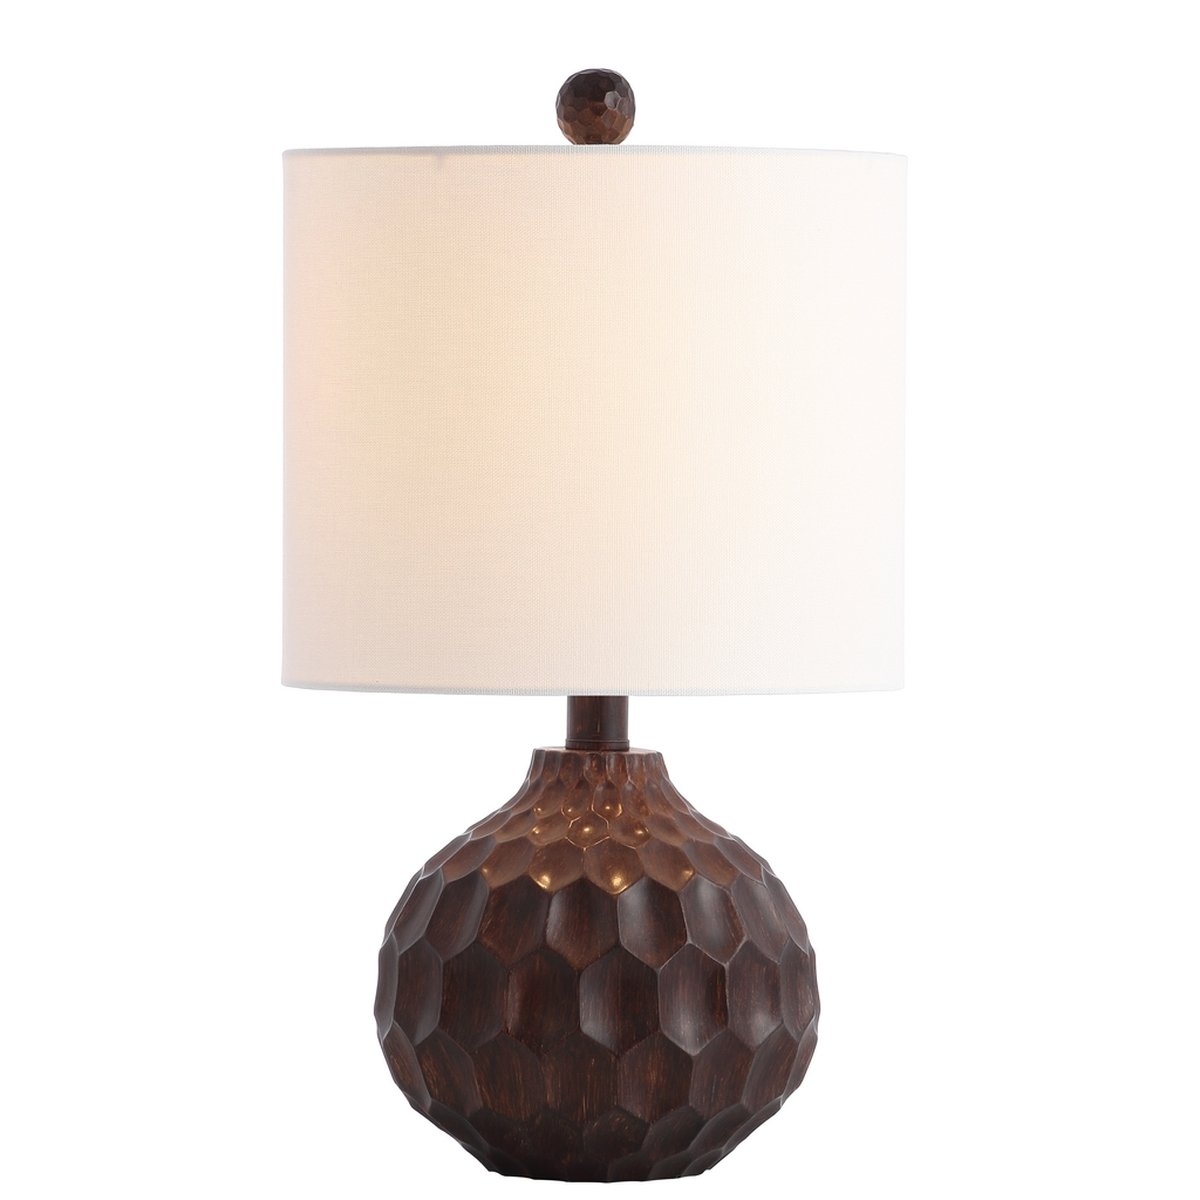 Lucca Table Lamp - Dark Brown - Arlo Home - Image 0